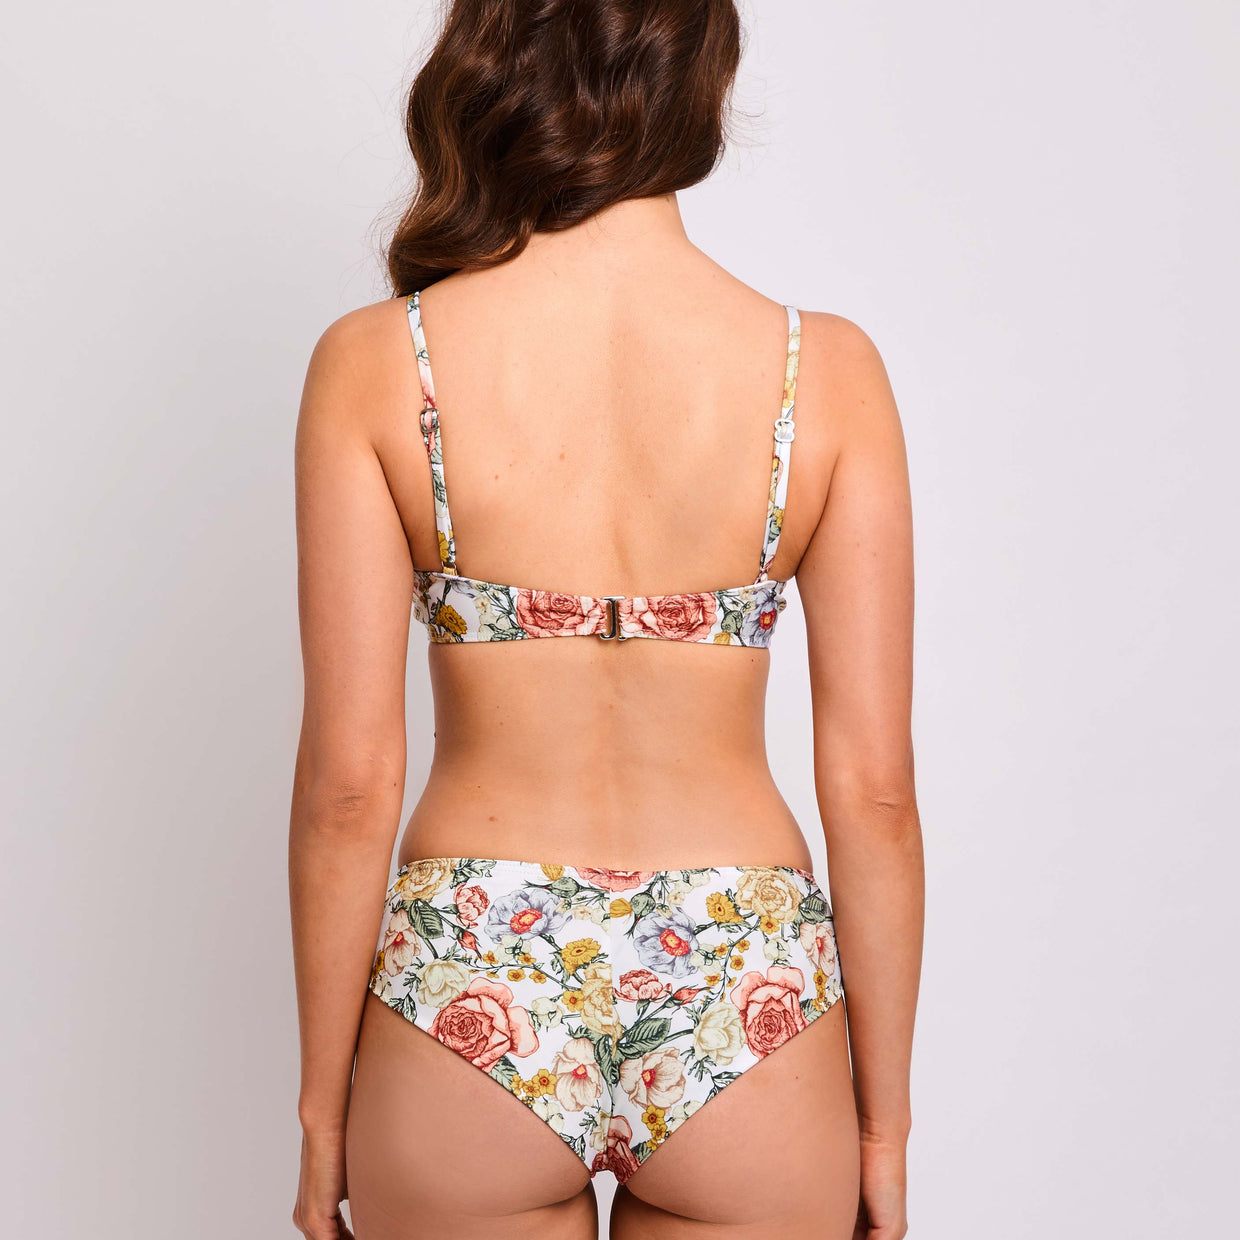 Dalia-bikini-cottage-garden-back-contessa-volpi-summer-swimwear-collection